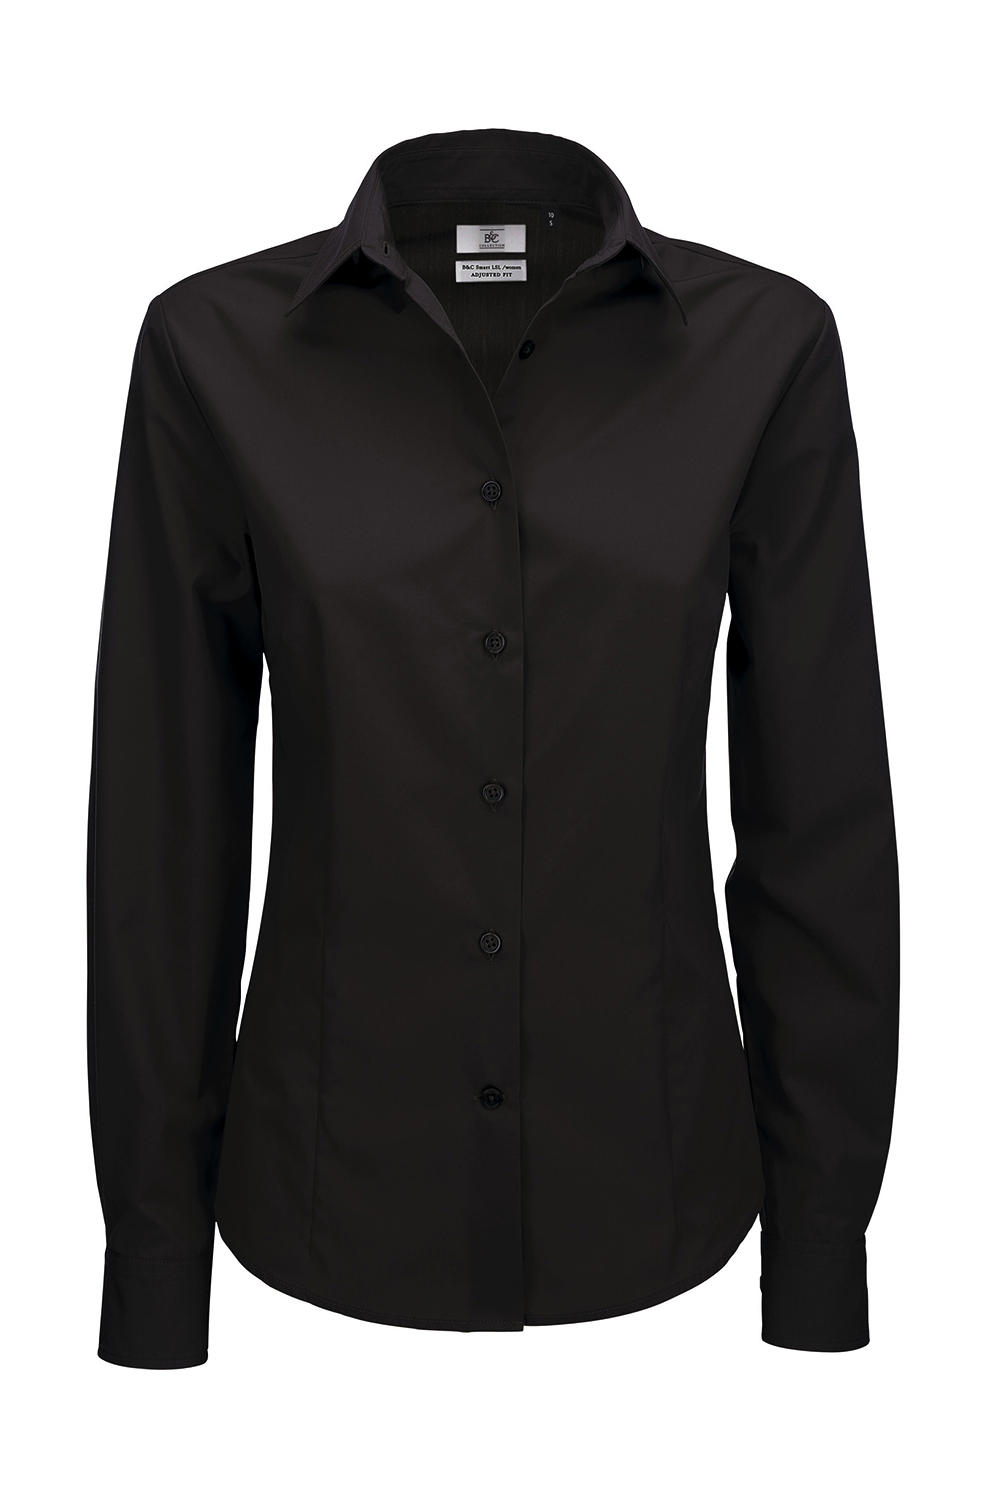  Smart LSL/women Poplin Shirt in Farbe Black